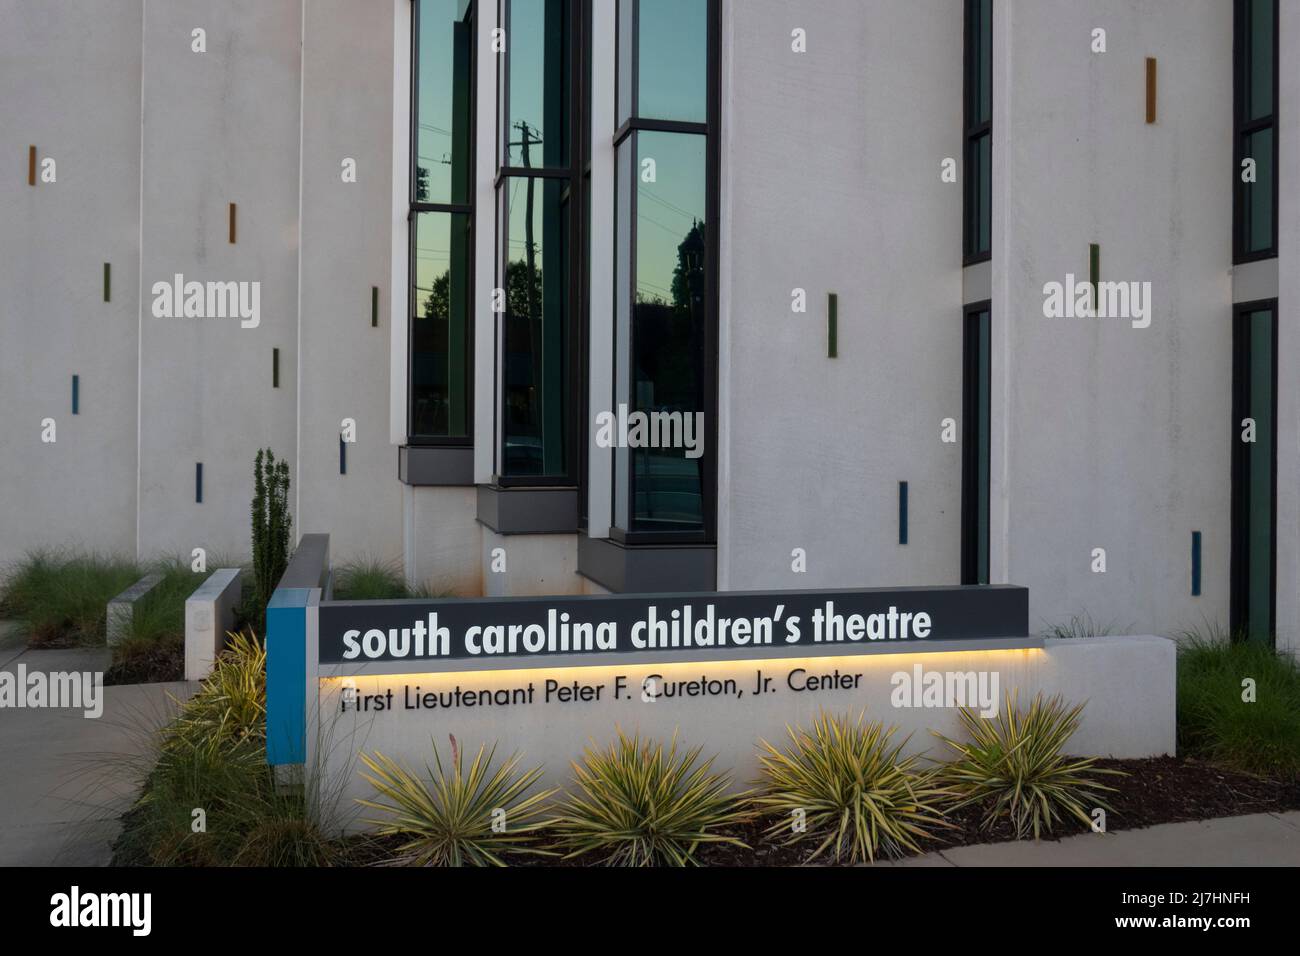 South Carolina Children's theatre in Greenville SC Stock Photo